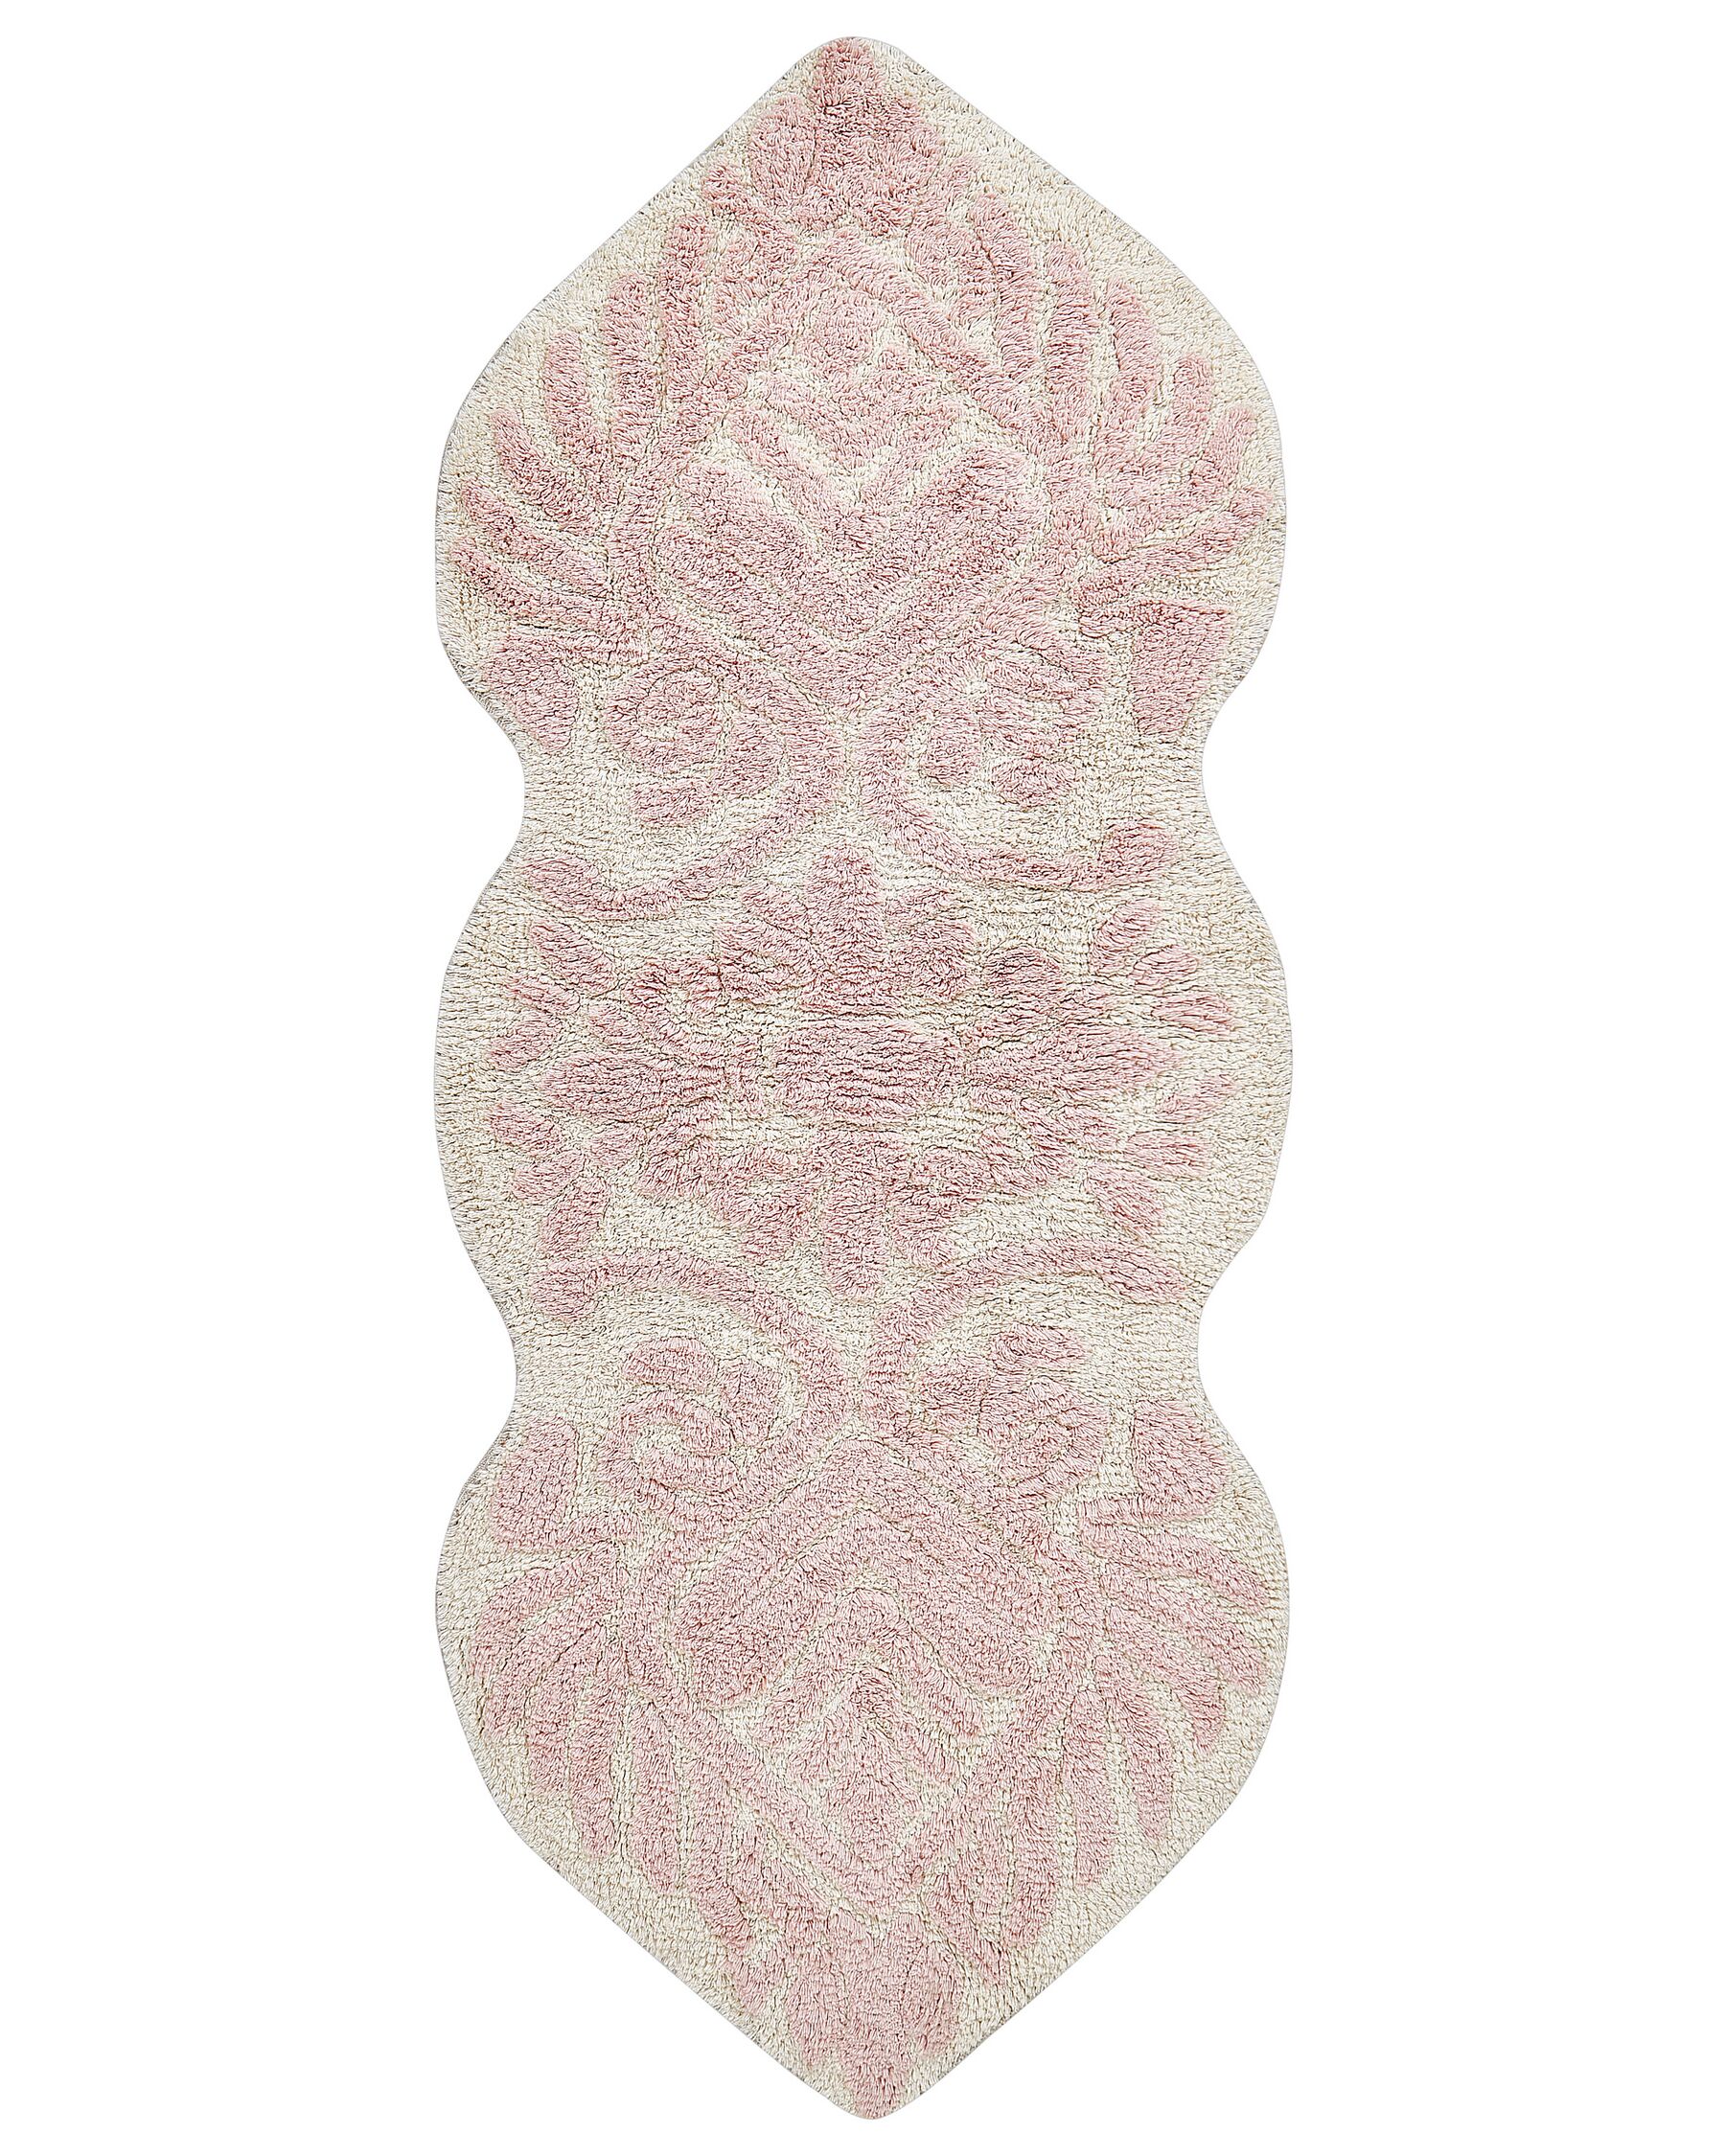 Rózsaszín pamut fürdőszobaszőnyeg 150 x 60 cm CANBAR_905475